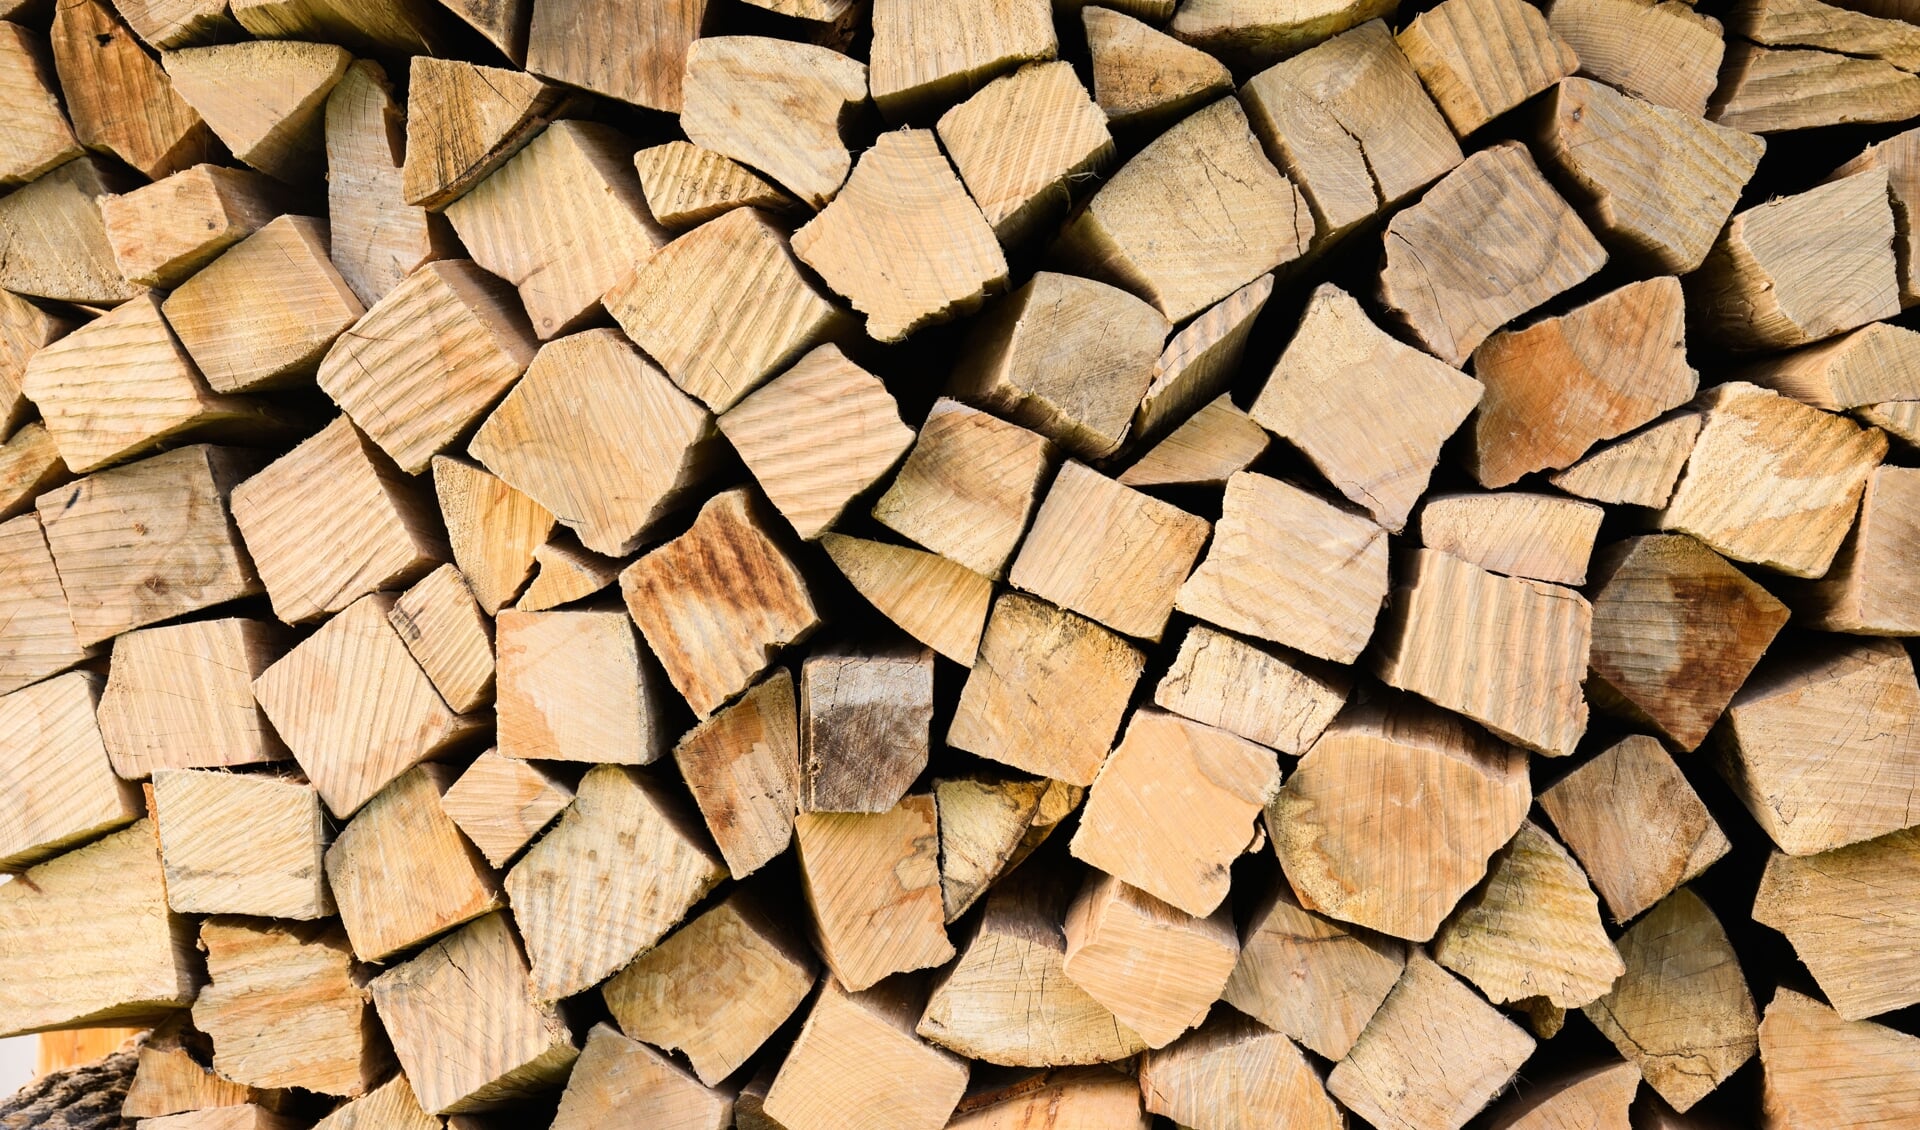 Trods stigende priser på brænde og mangel på træ til afbrændning sker der kun sporadisk tyveri af brænde i skovene i Slesvig-Holsten. Foto: